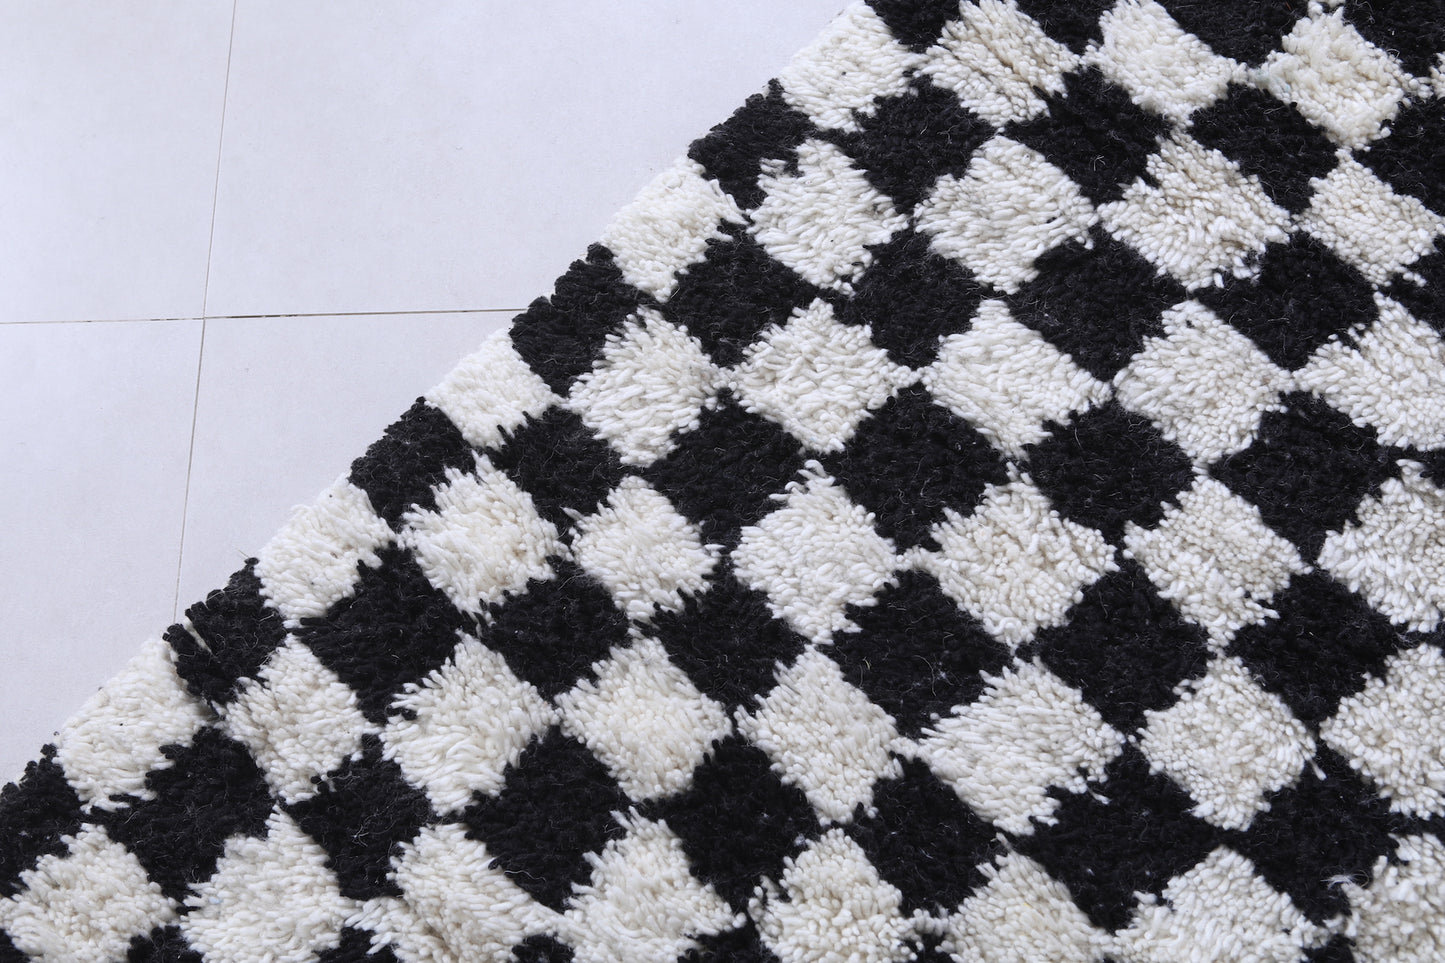 Checkered Moroccan rug - Handmade rug - Custom Rug